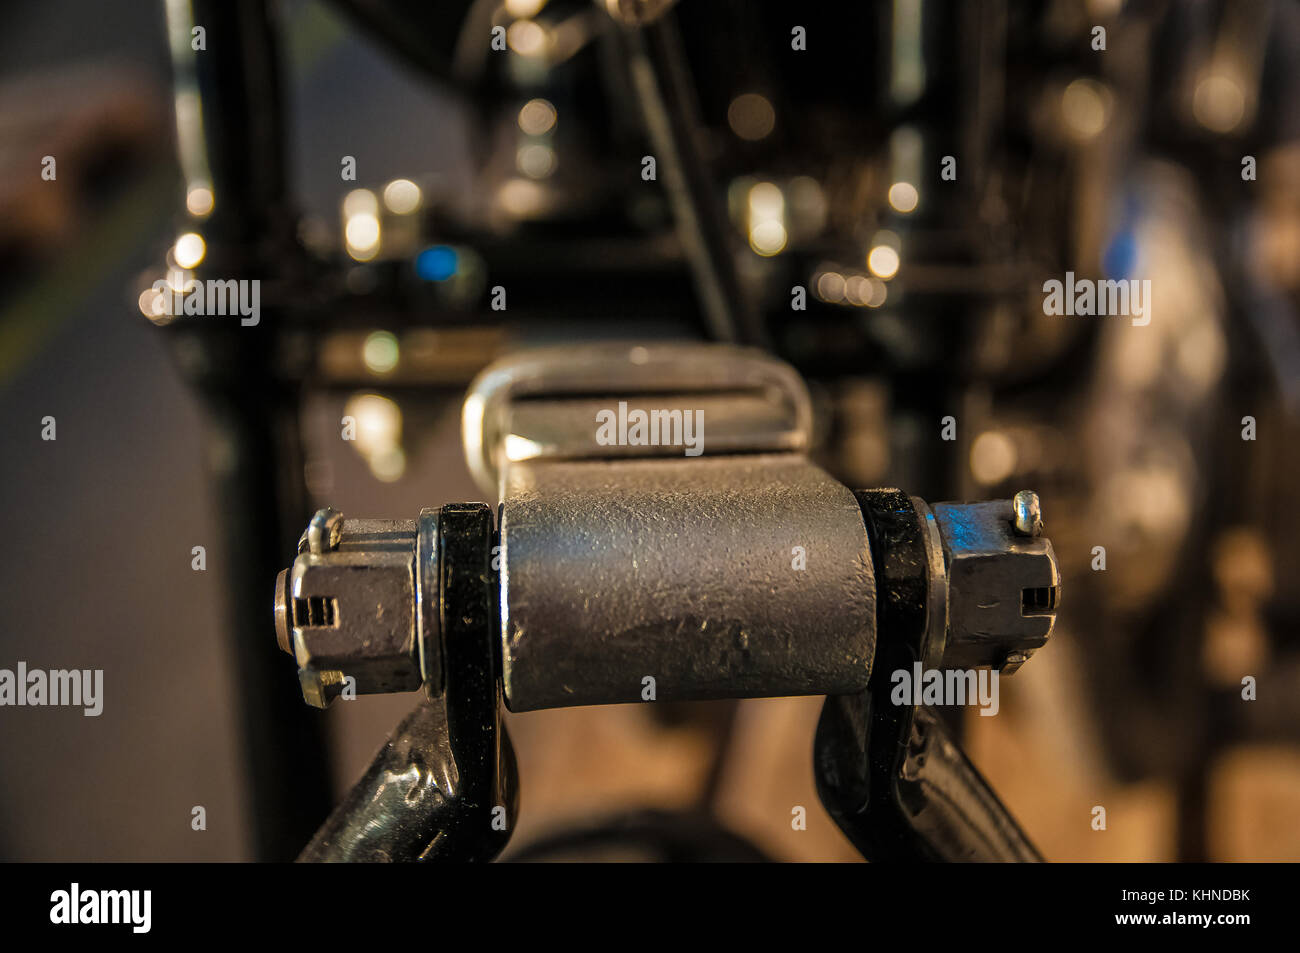 Detaillierte Aufnahmen von Teilen und Komponenten eines alten Retro Motorcycle Veteran Stockfoto